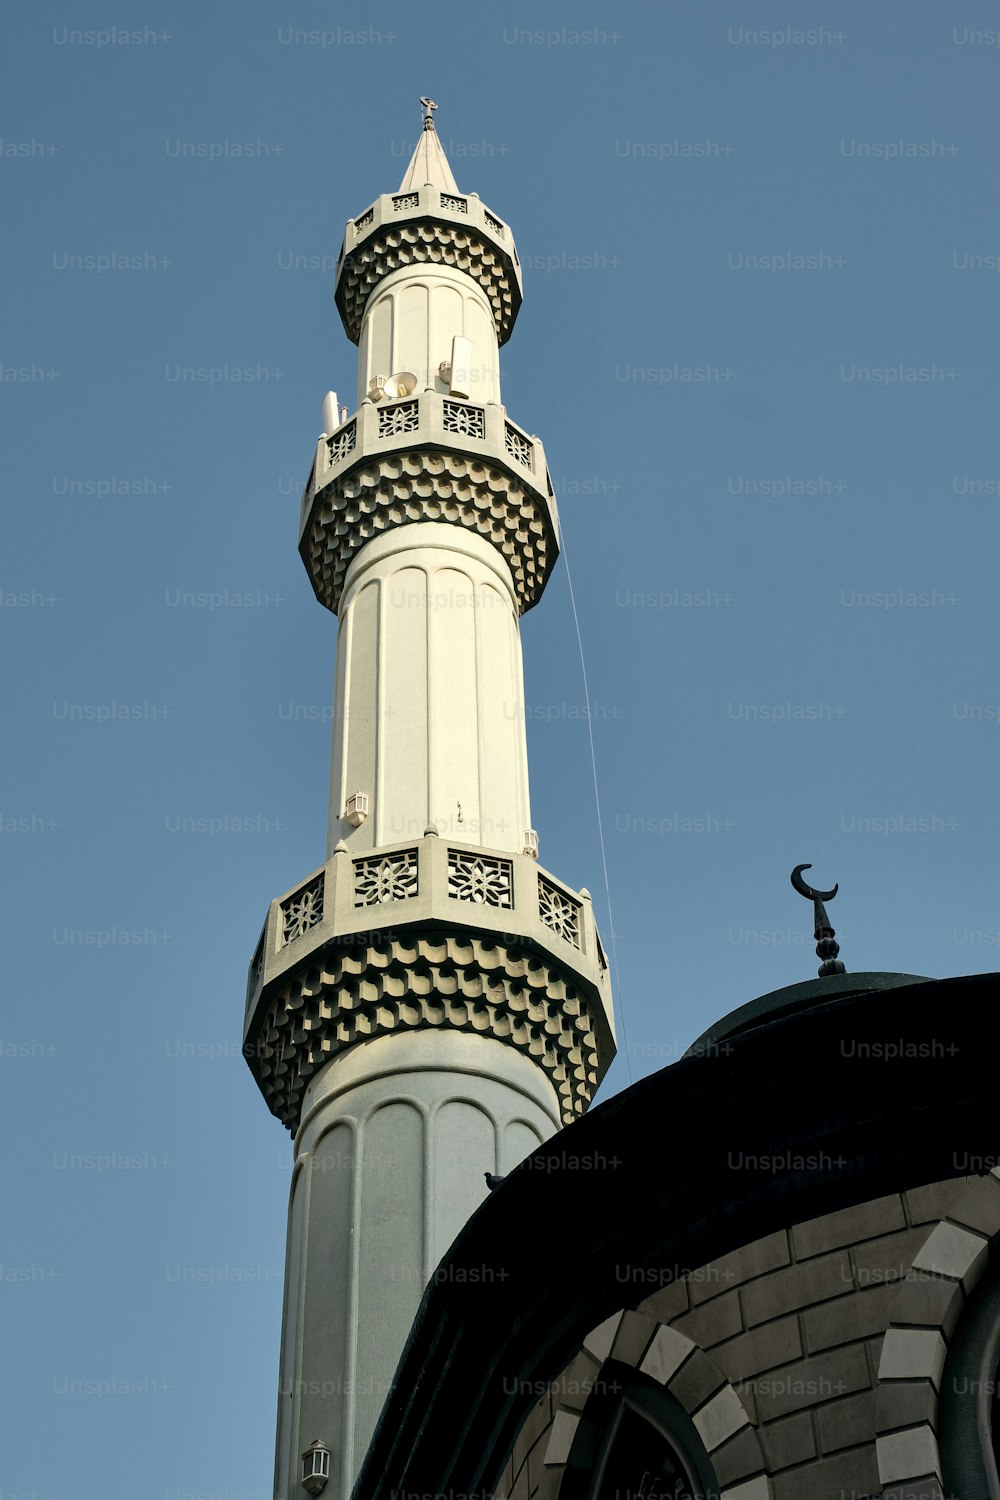 두바이의 화창한 날에 푸른 하늘을 배경으로 모스크의 첨탑을 로우 앵글로 촬영한 사진